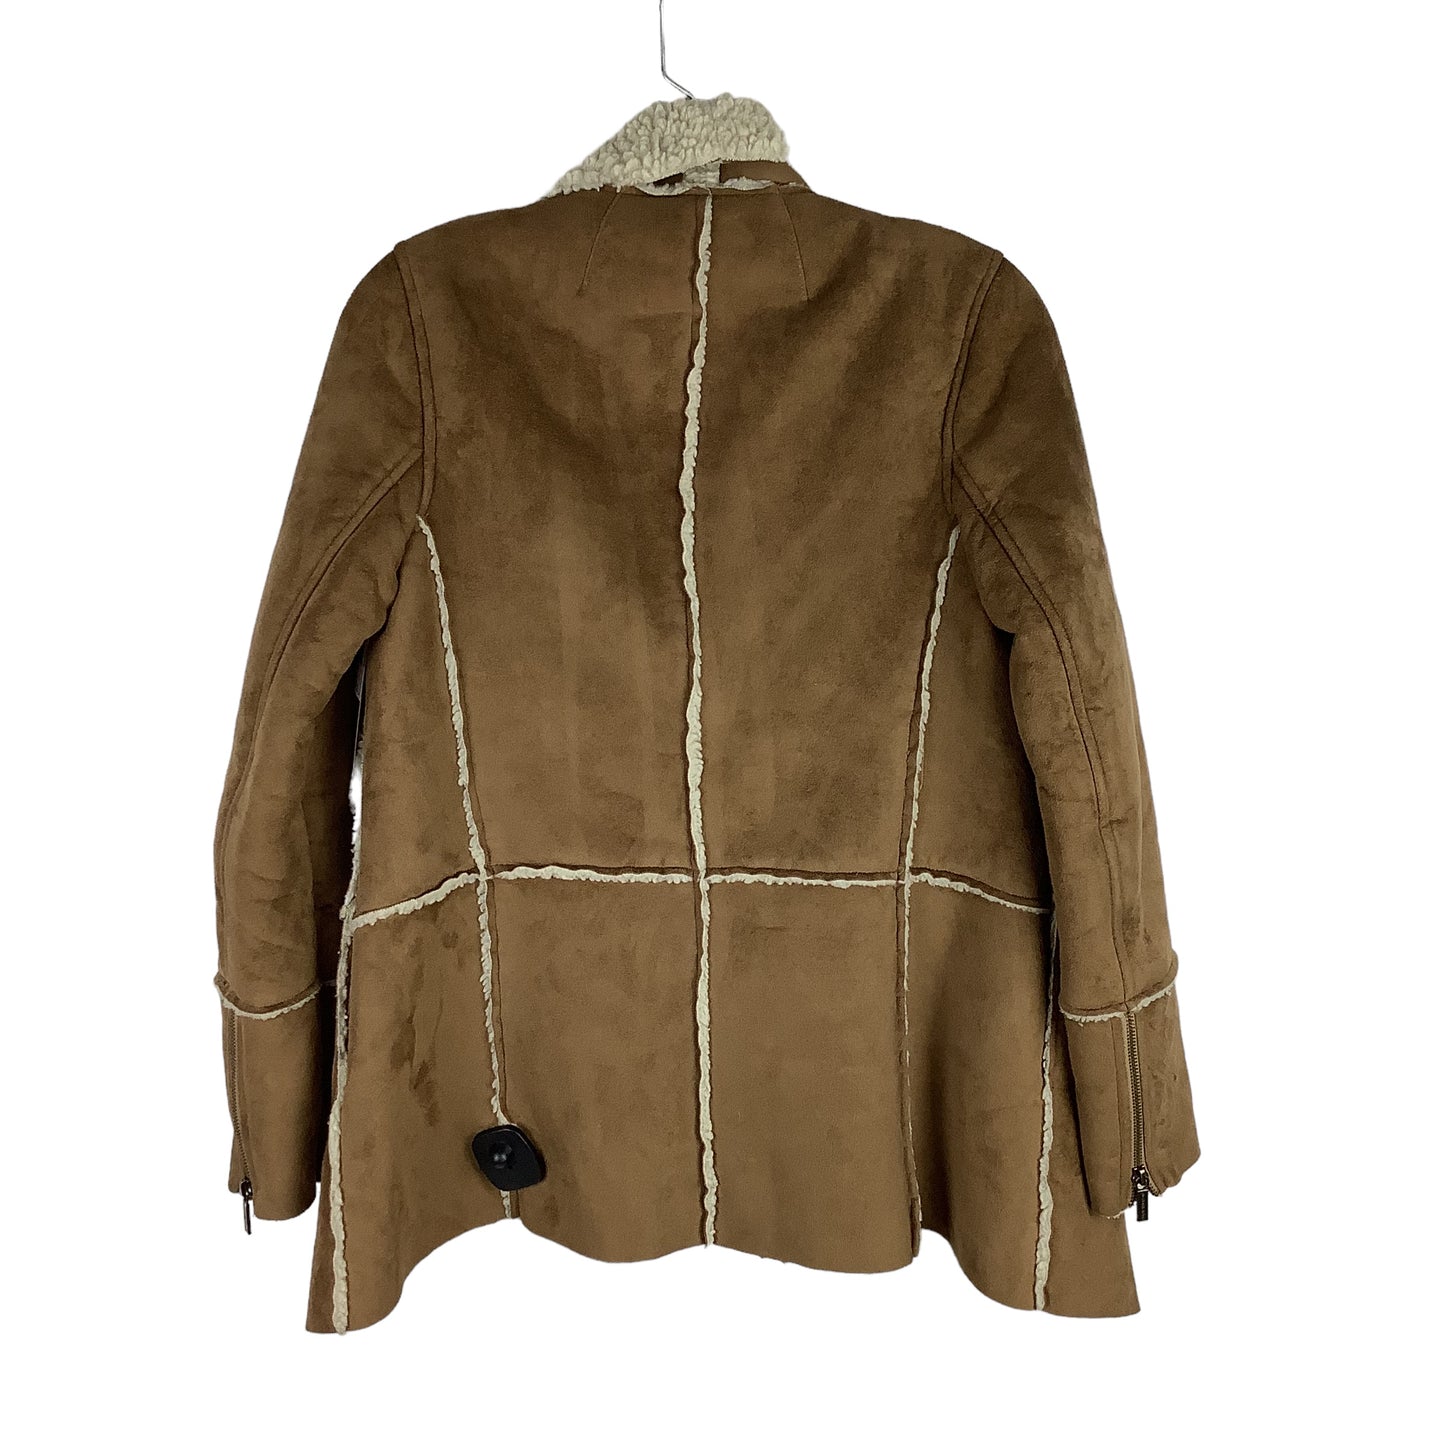 Coat Designer By Michael Kors Size: Est. XS